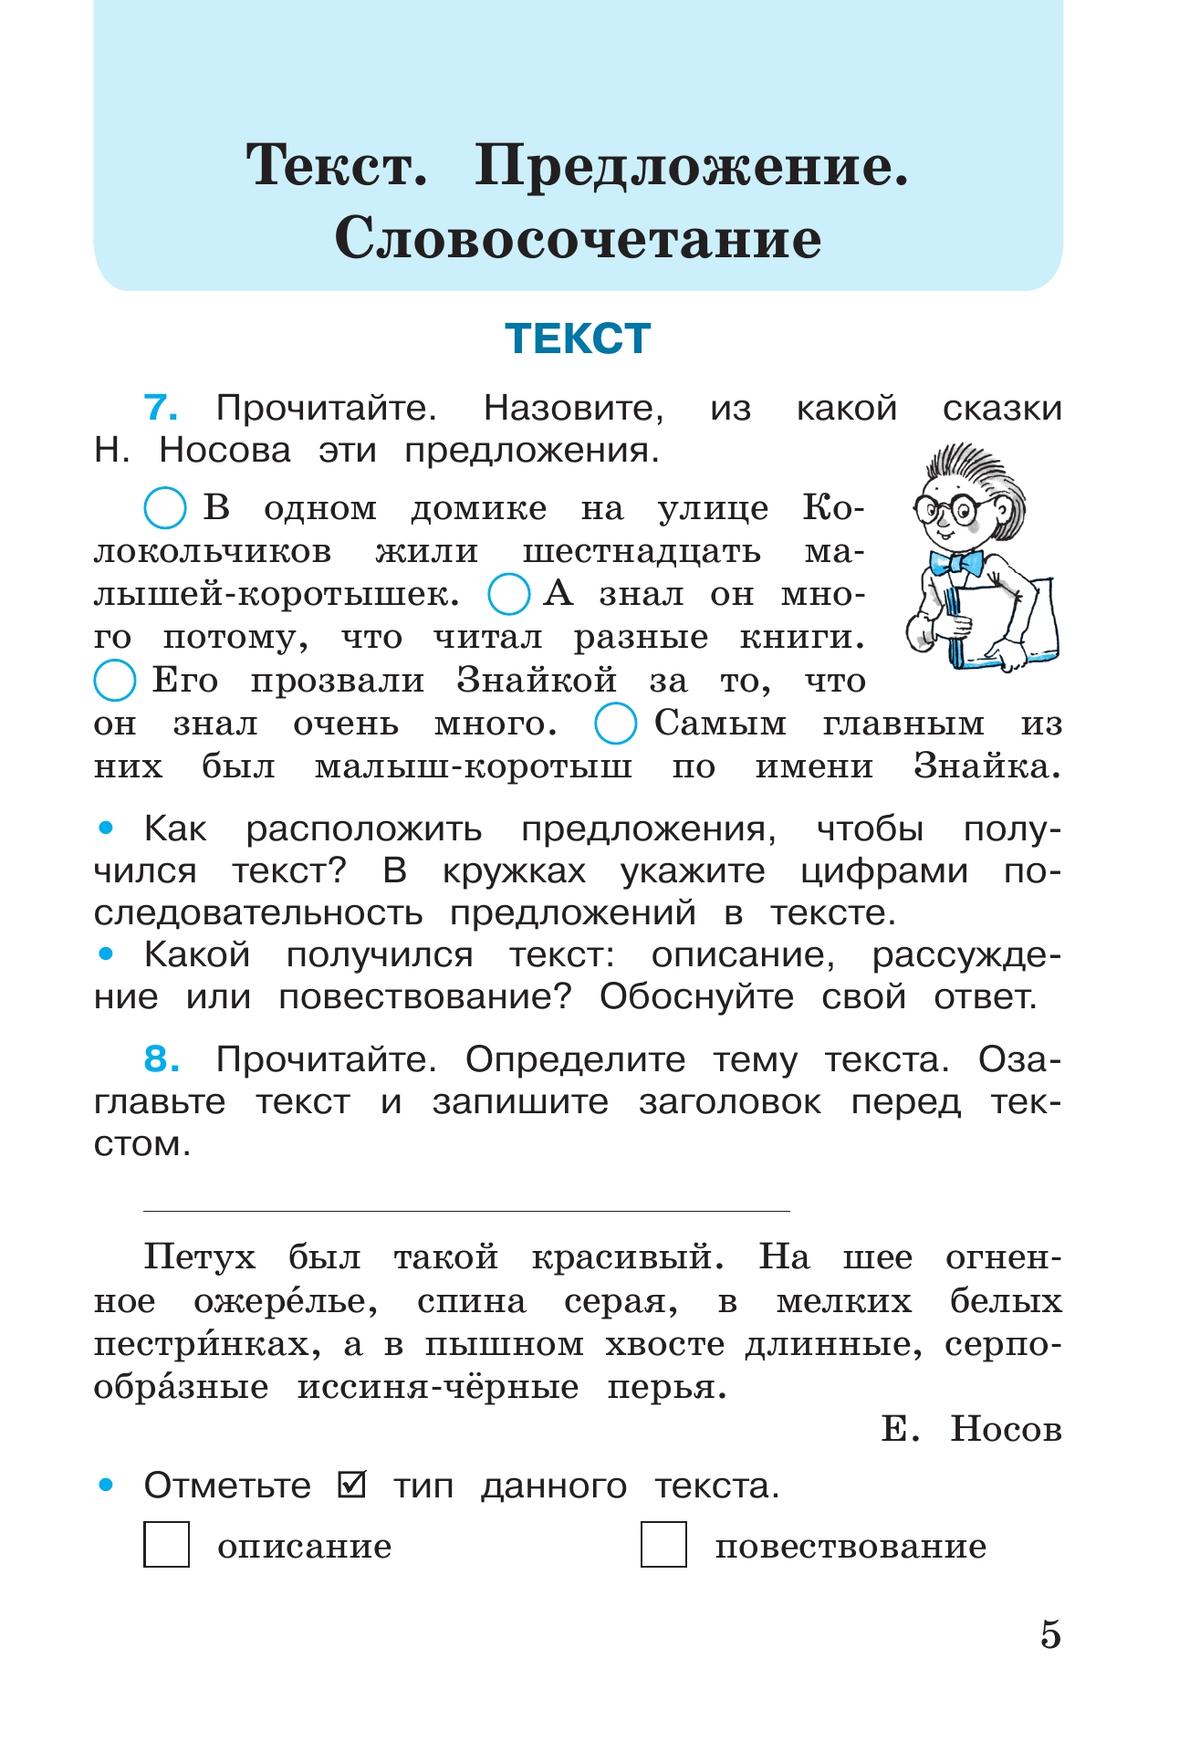 Русский язык. Рабочая тетрадь. 3 класс. В 2-х ч. Ч. 1 2